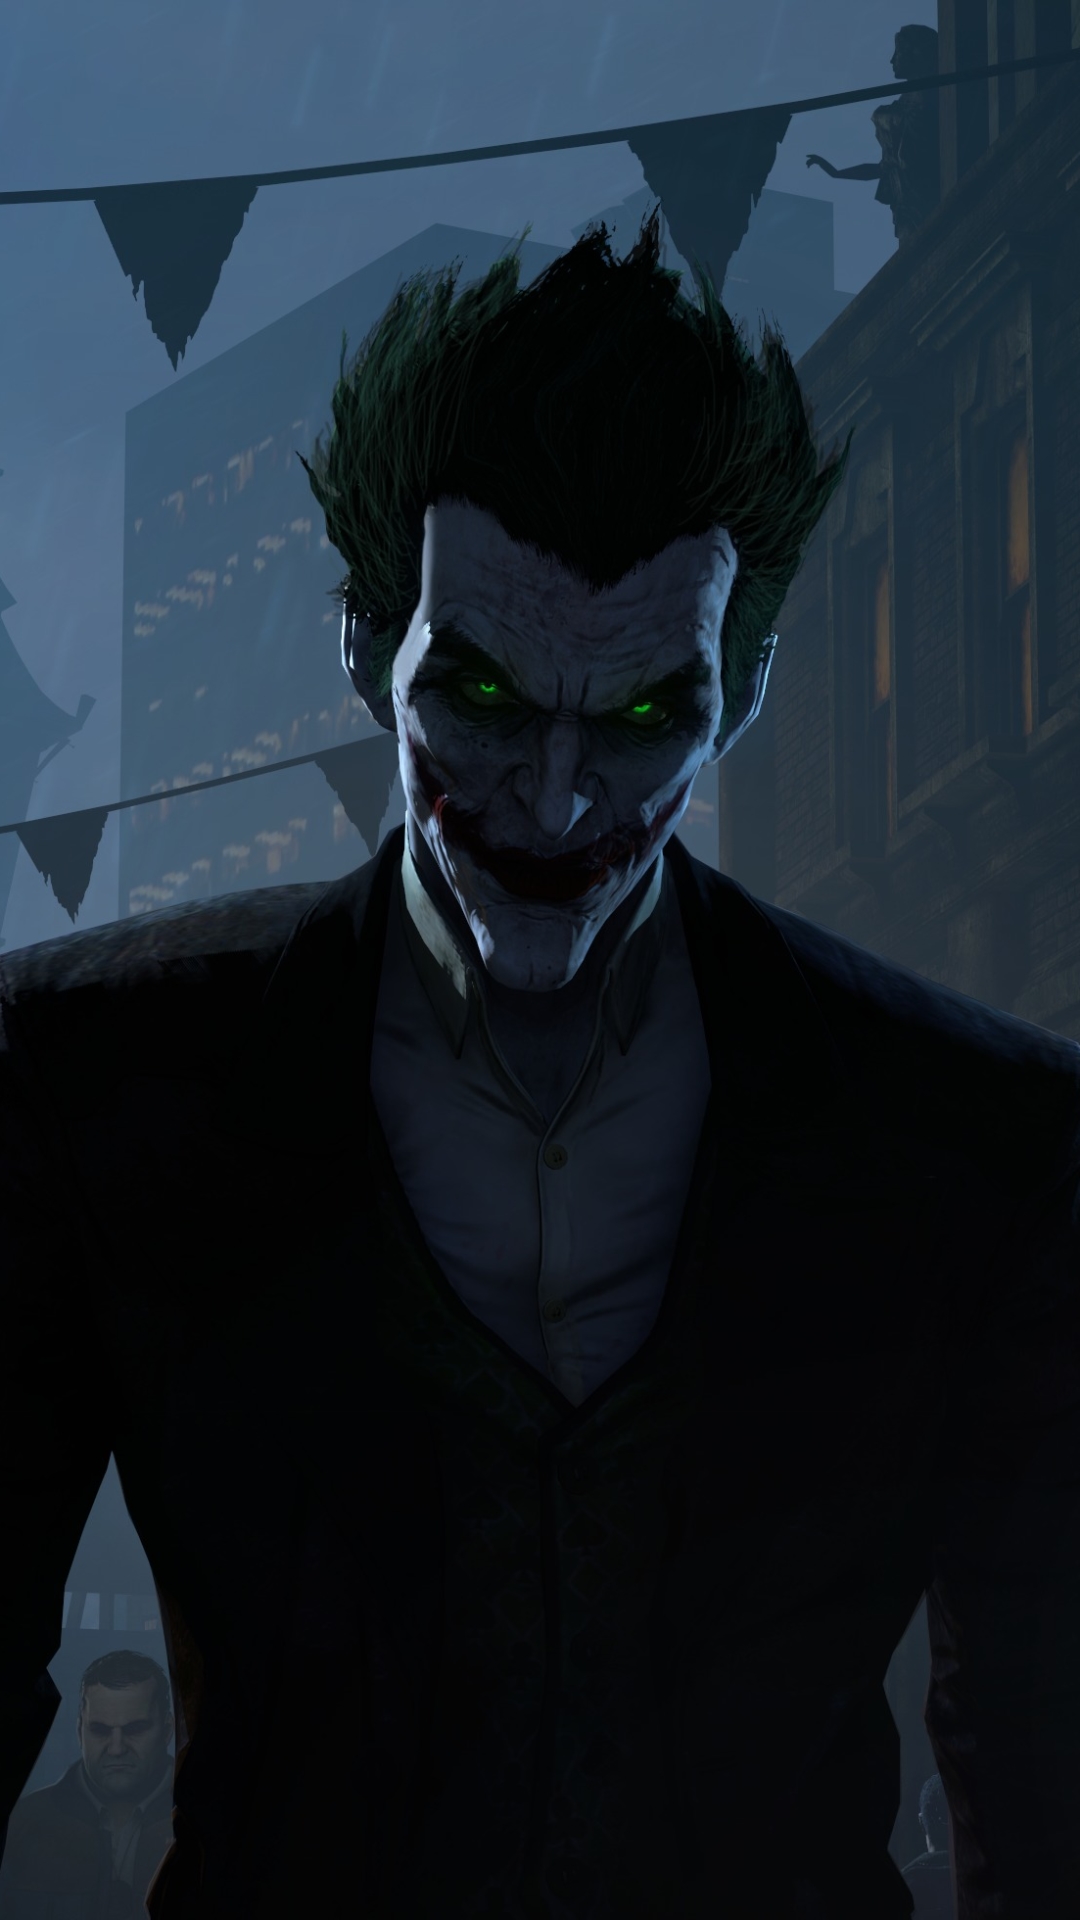 Descarga gratuita de fondo de pantalla para móvil de Bufón, Videojuego, Guasón, Hombre Murciélago, Batman: Arkham Origins.